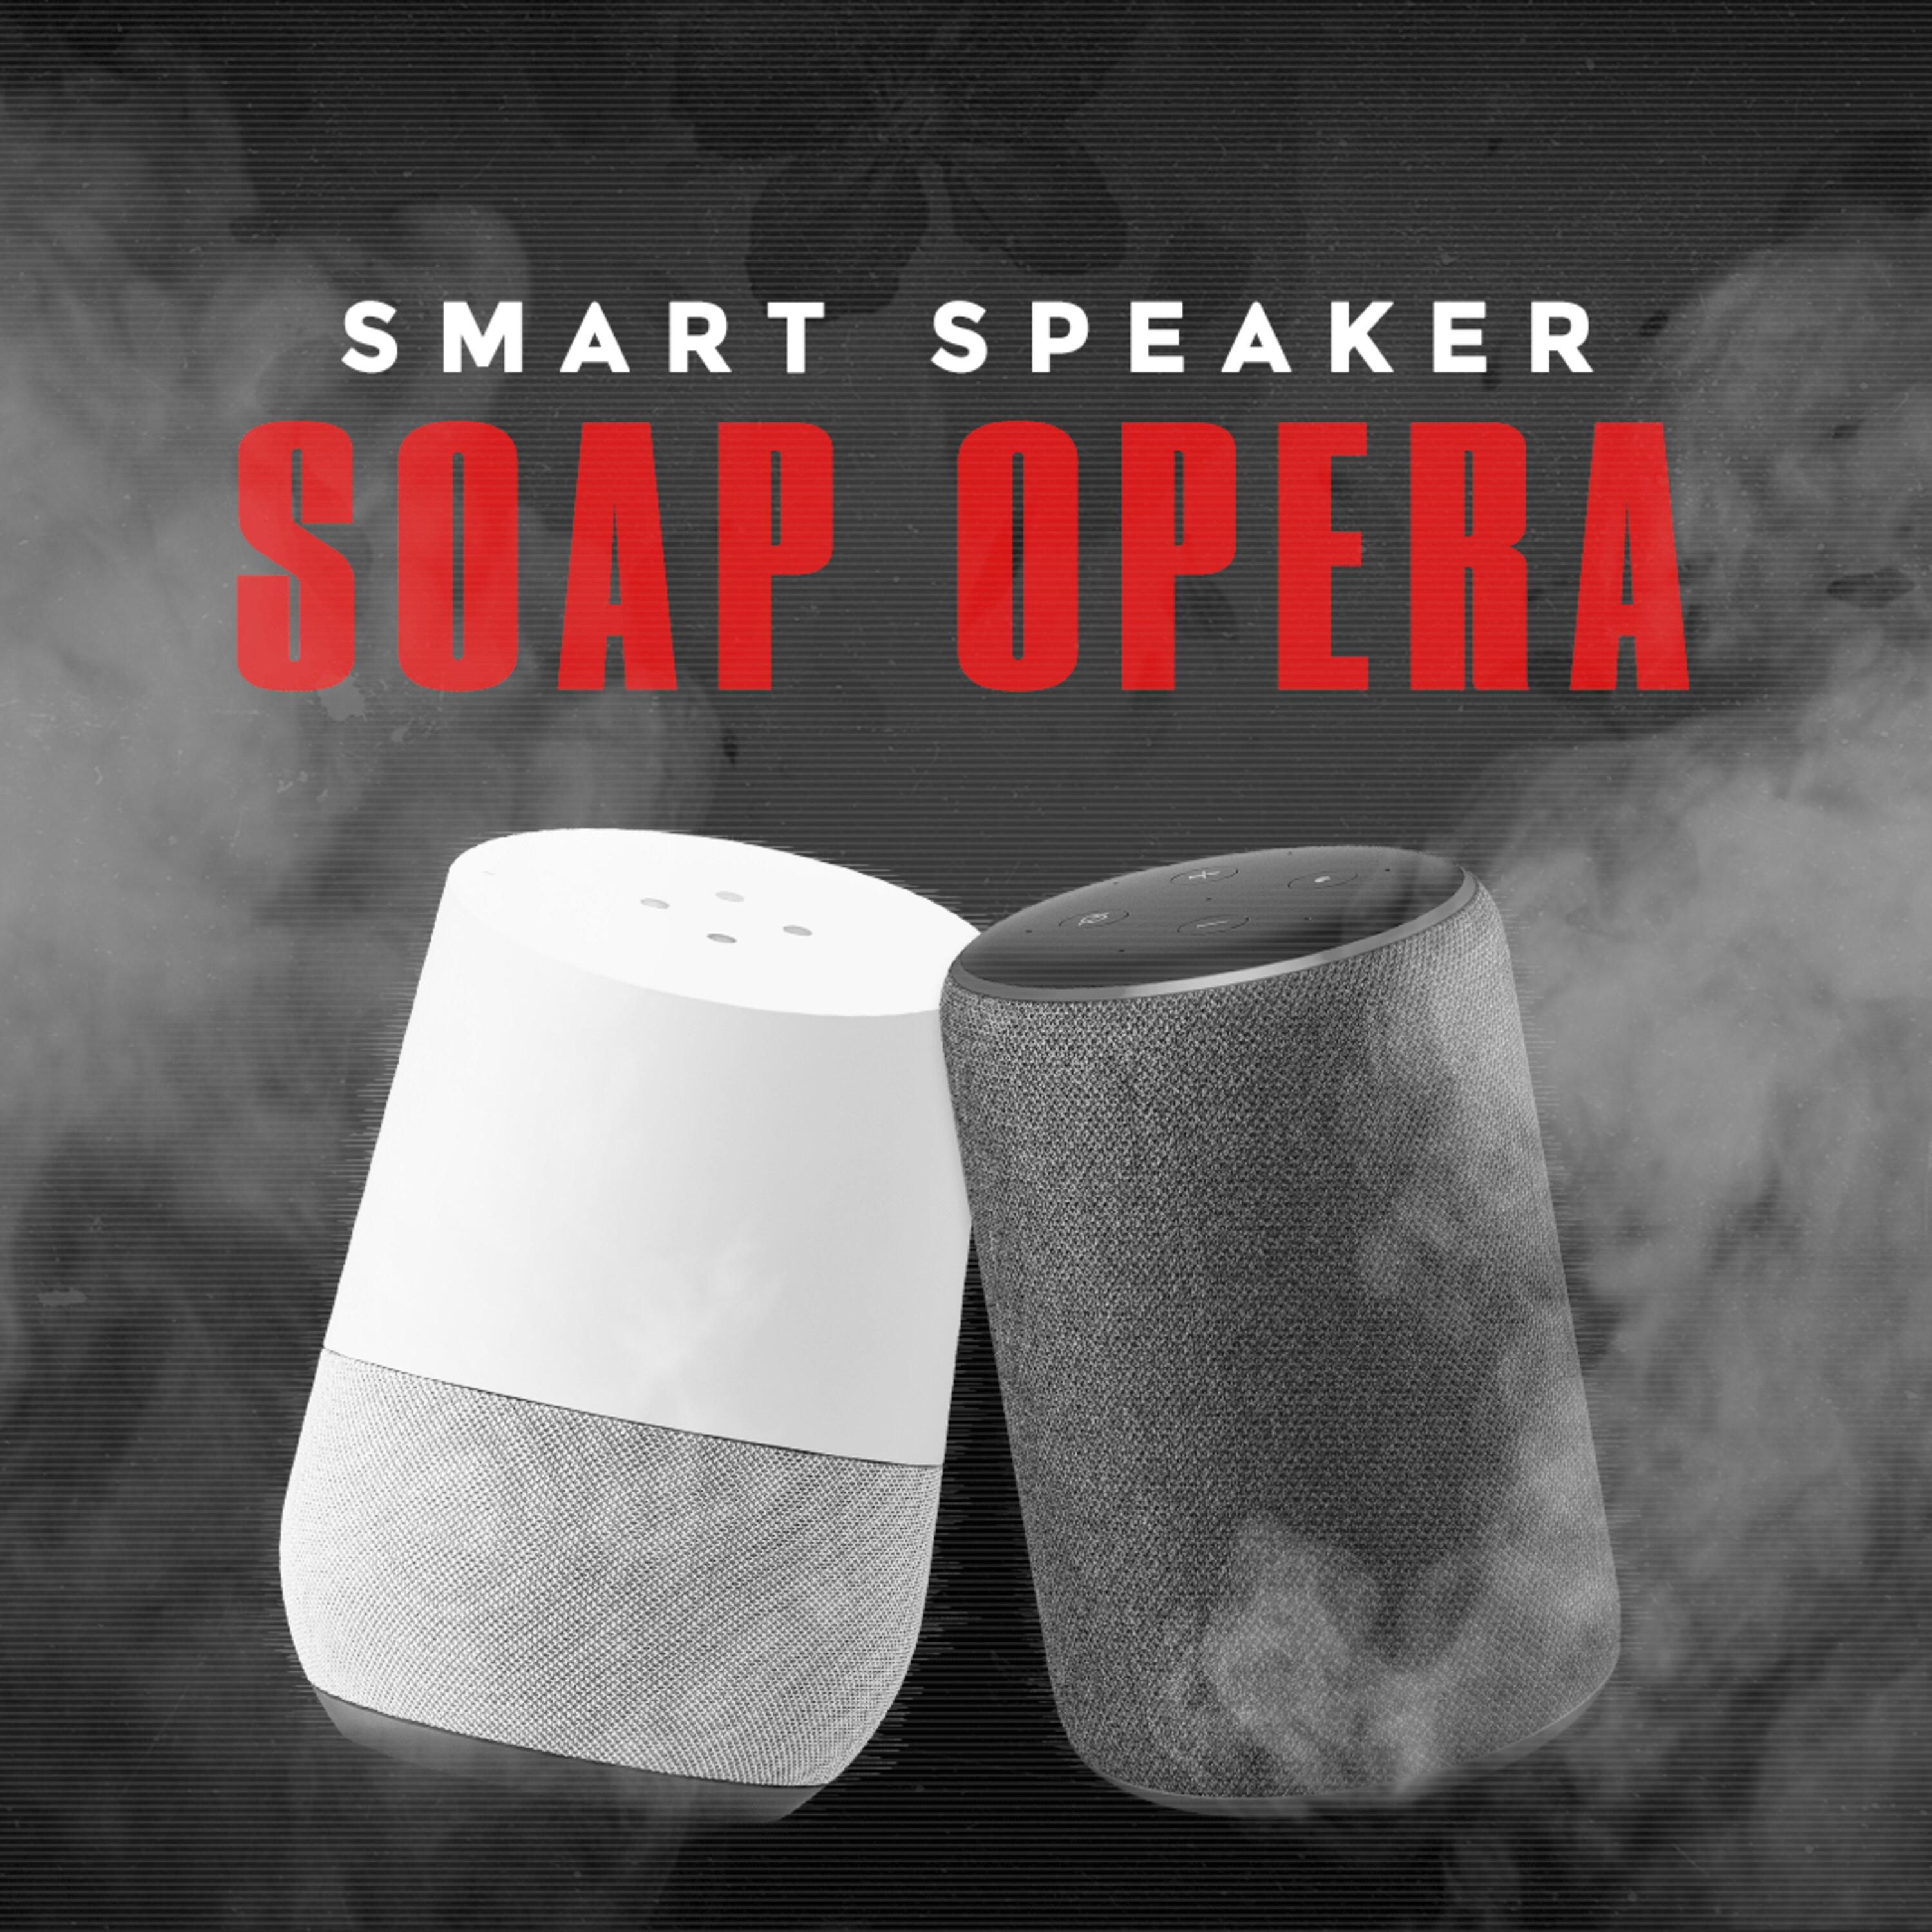 Smart Speaker Soap Opera: The dinner